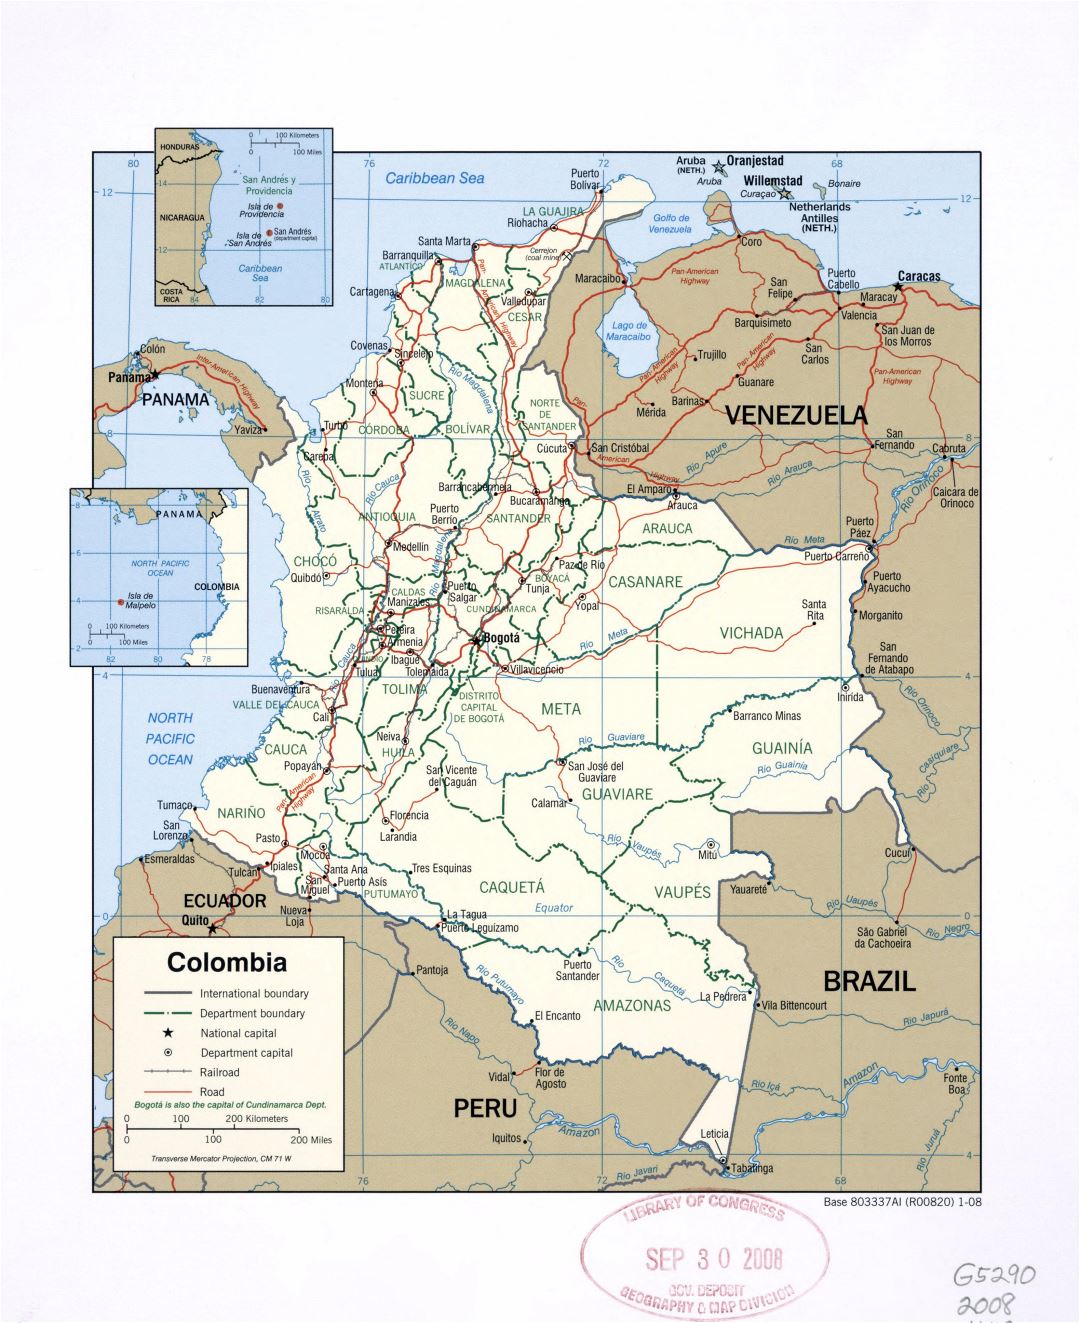 Большая детальная политическая и административная карта Колумбии с пометками крупных городов, дорог и железных дорог - 2008